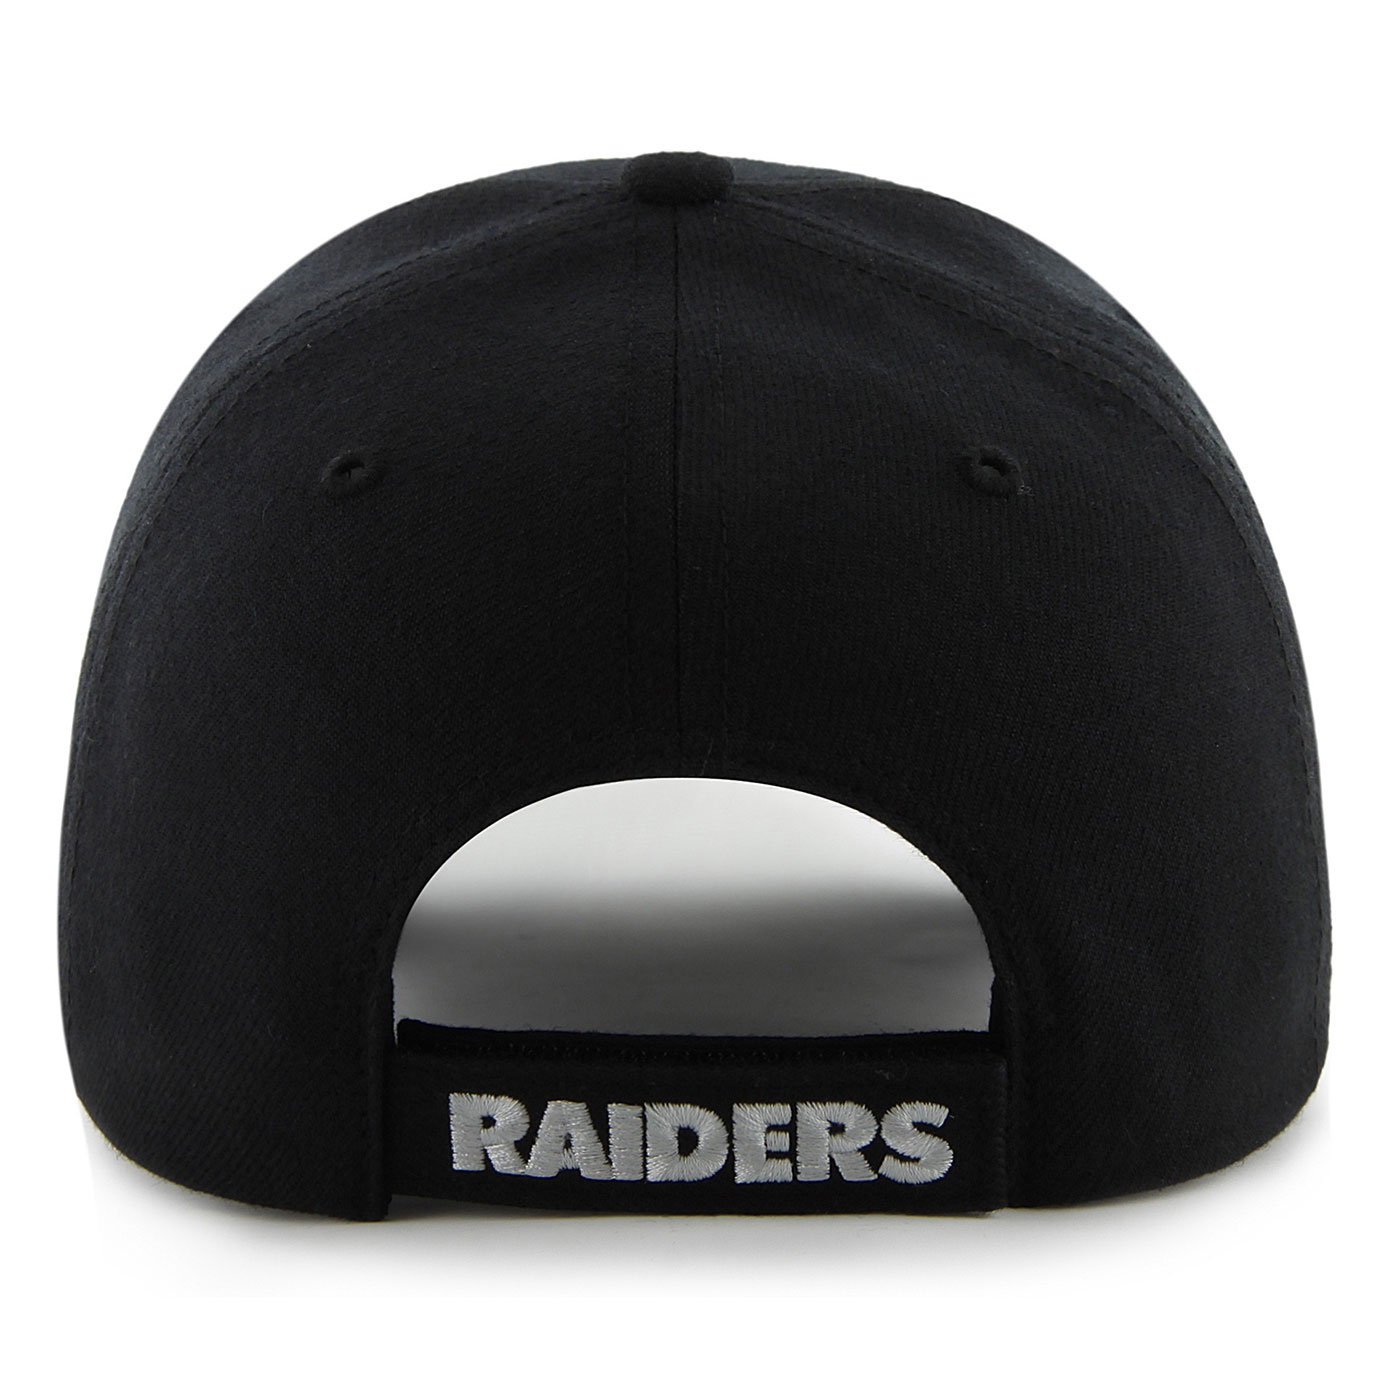 Las Vegas Raiders '47 Youth Basic MVP Adjustable Hat - Black